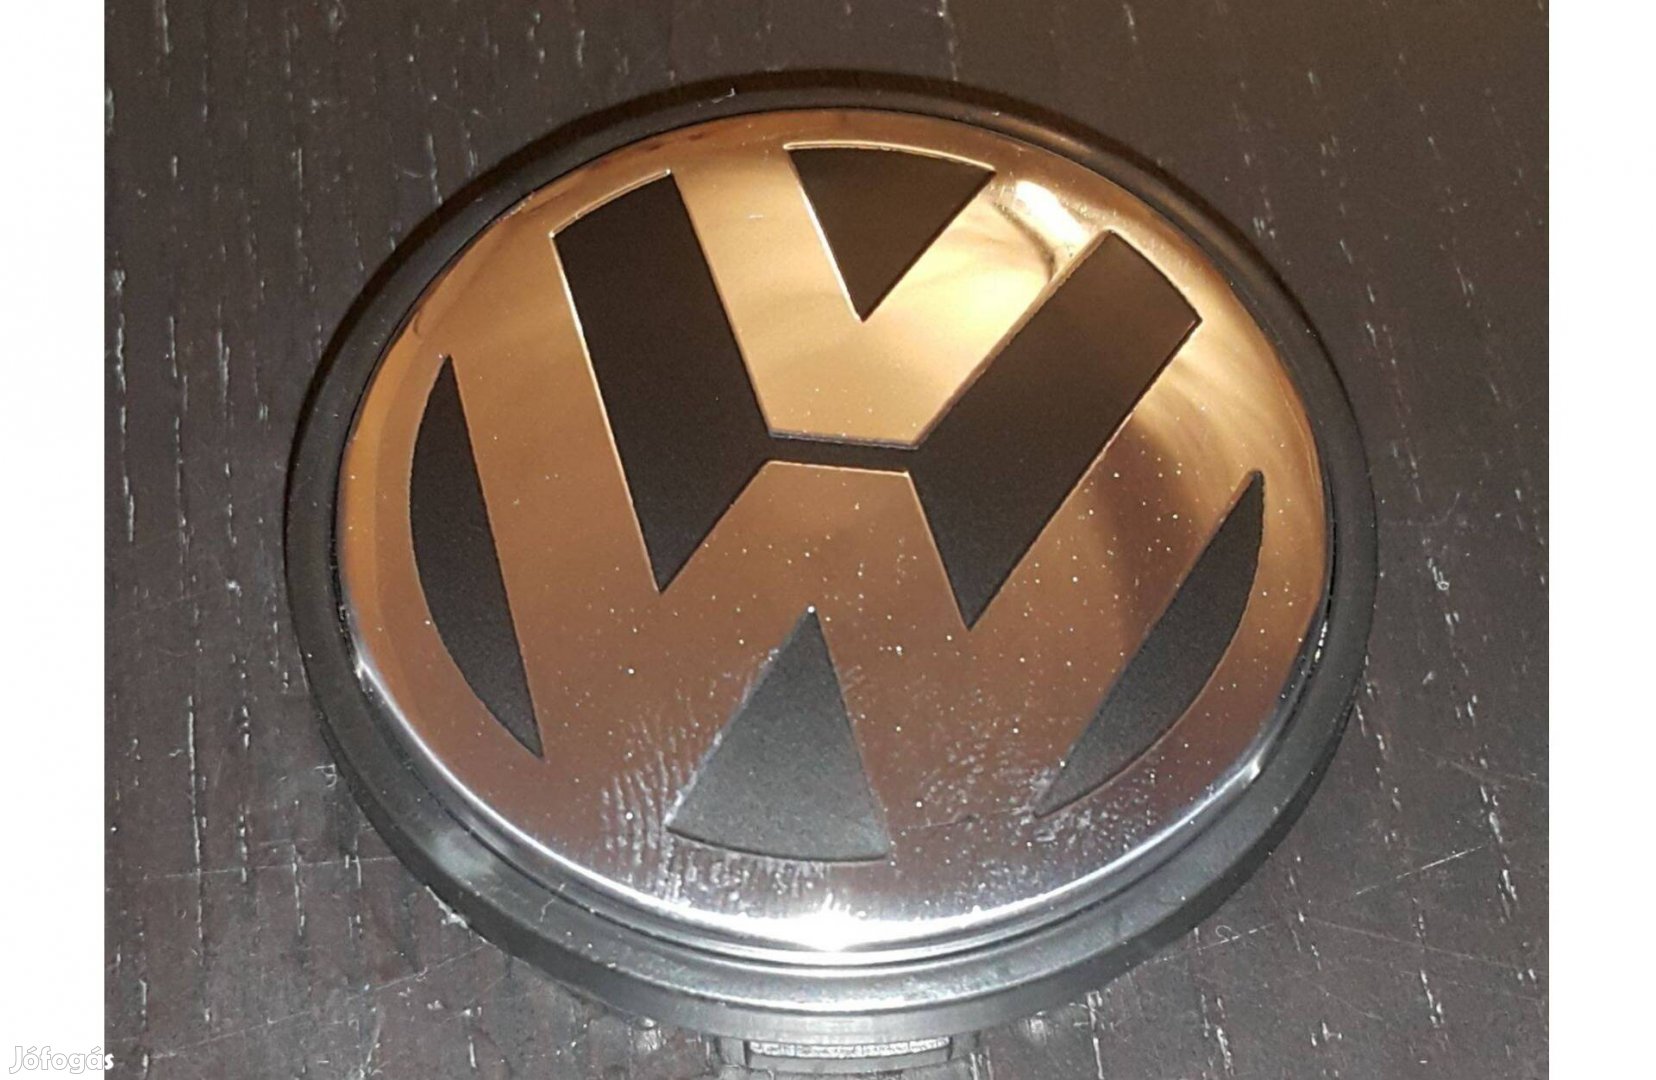 VW Volkswagen alufelni kupak közép porvédő 1J0601171 56mm